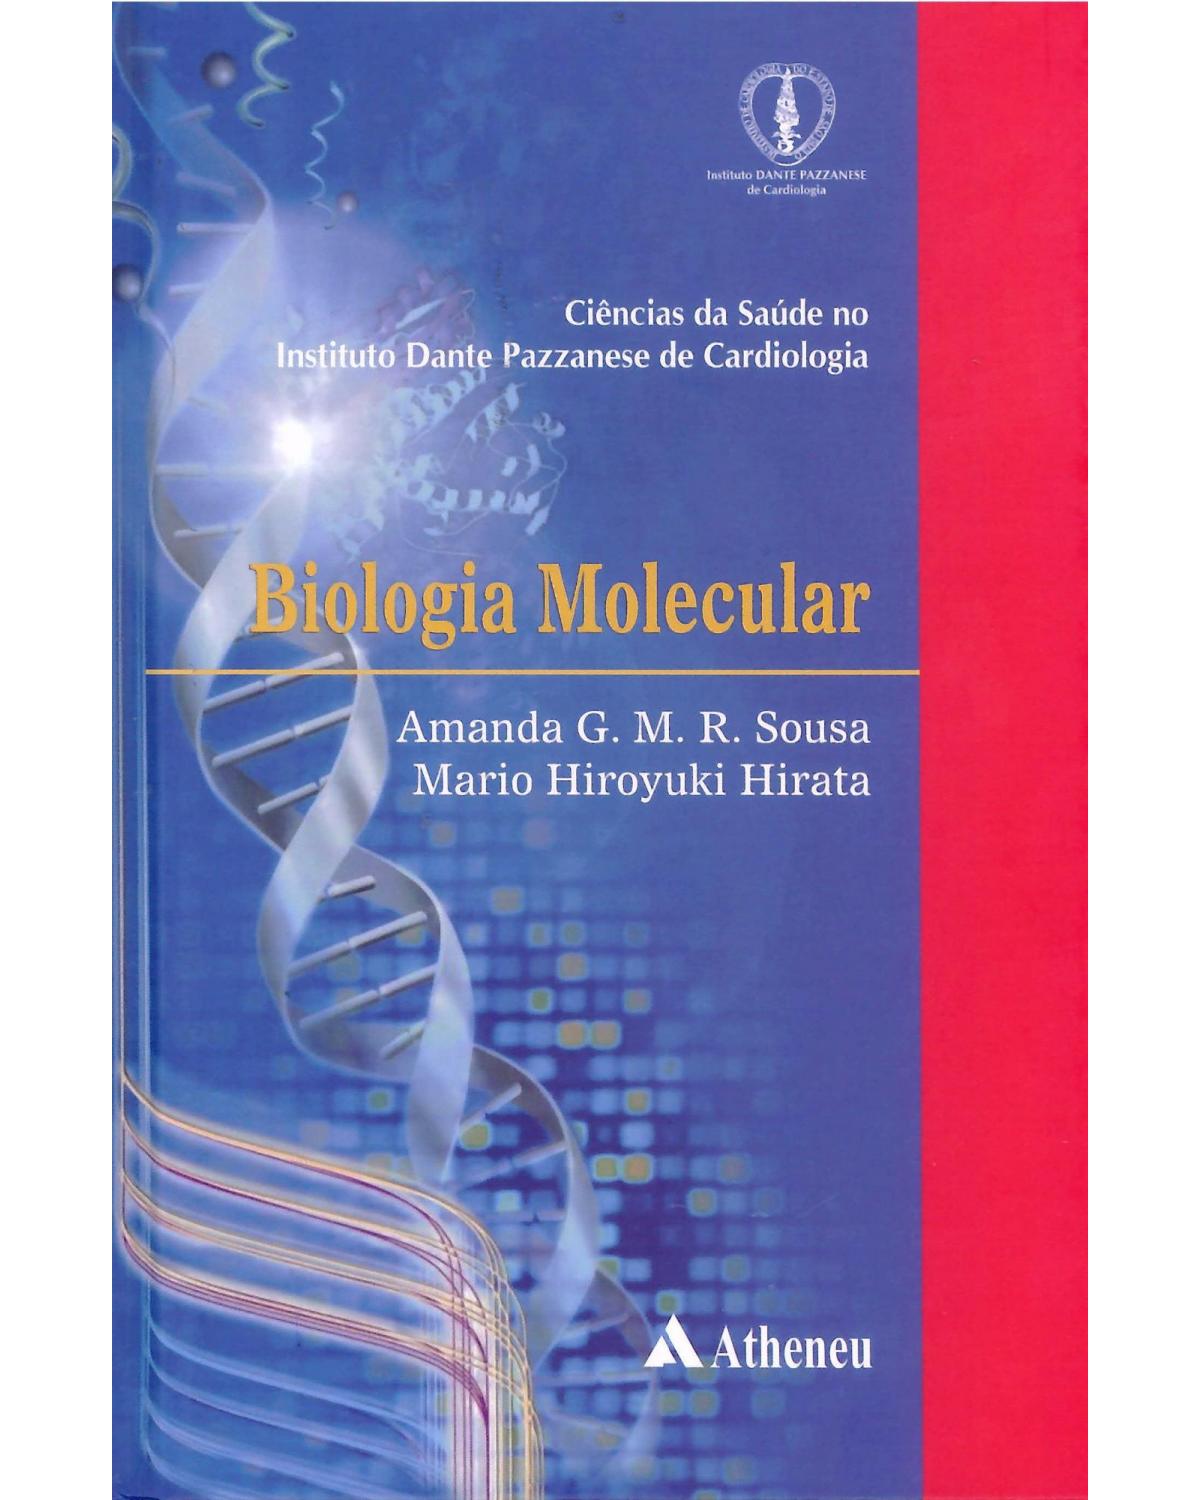 Biologia molecular - 1ª Edição | 2013